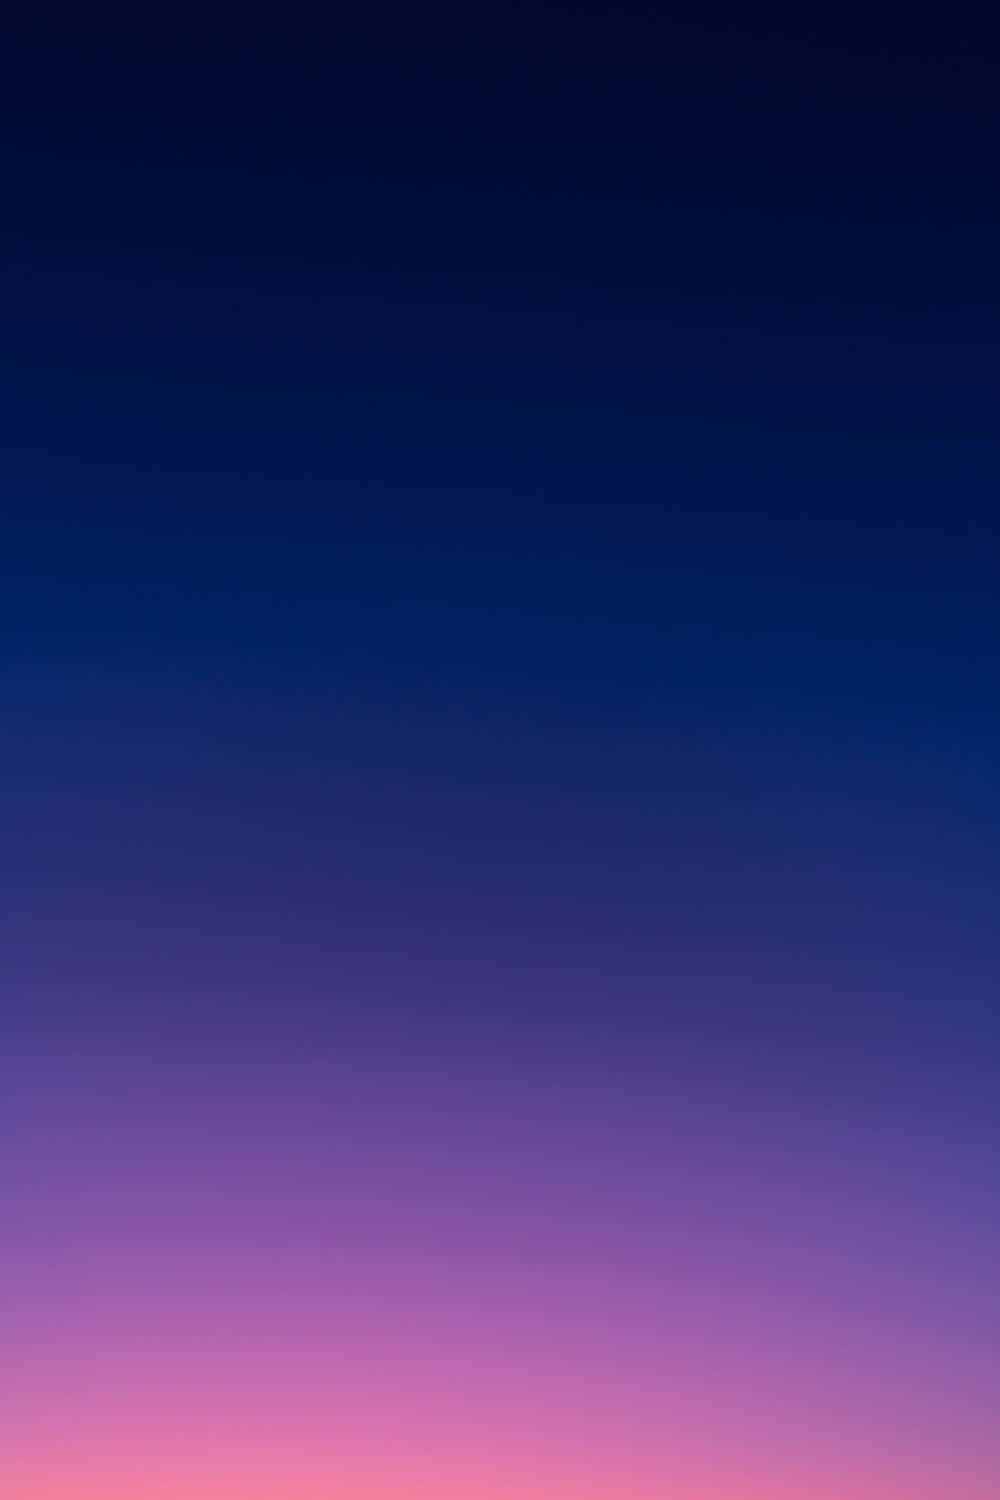 Caption: Captivating Purple Gradient Background.